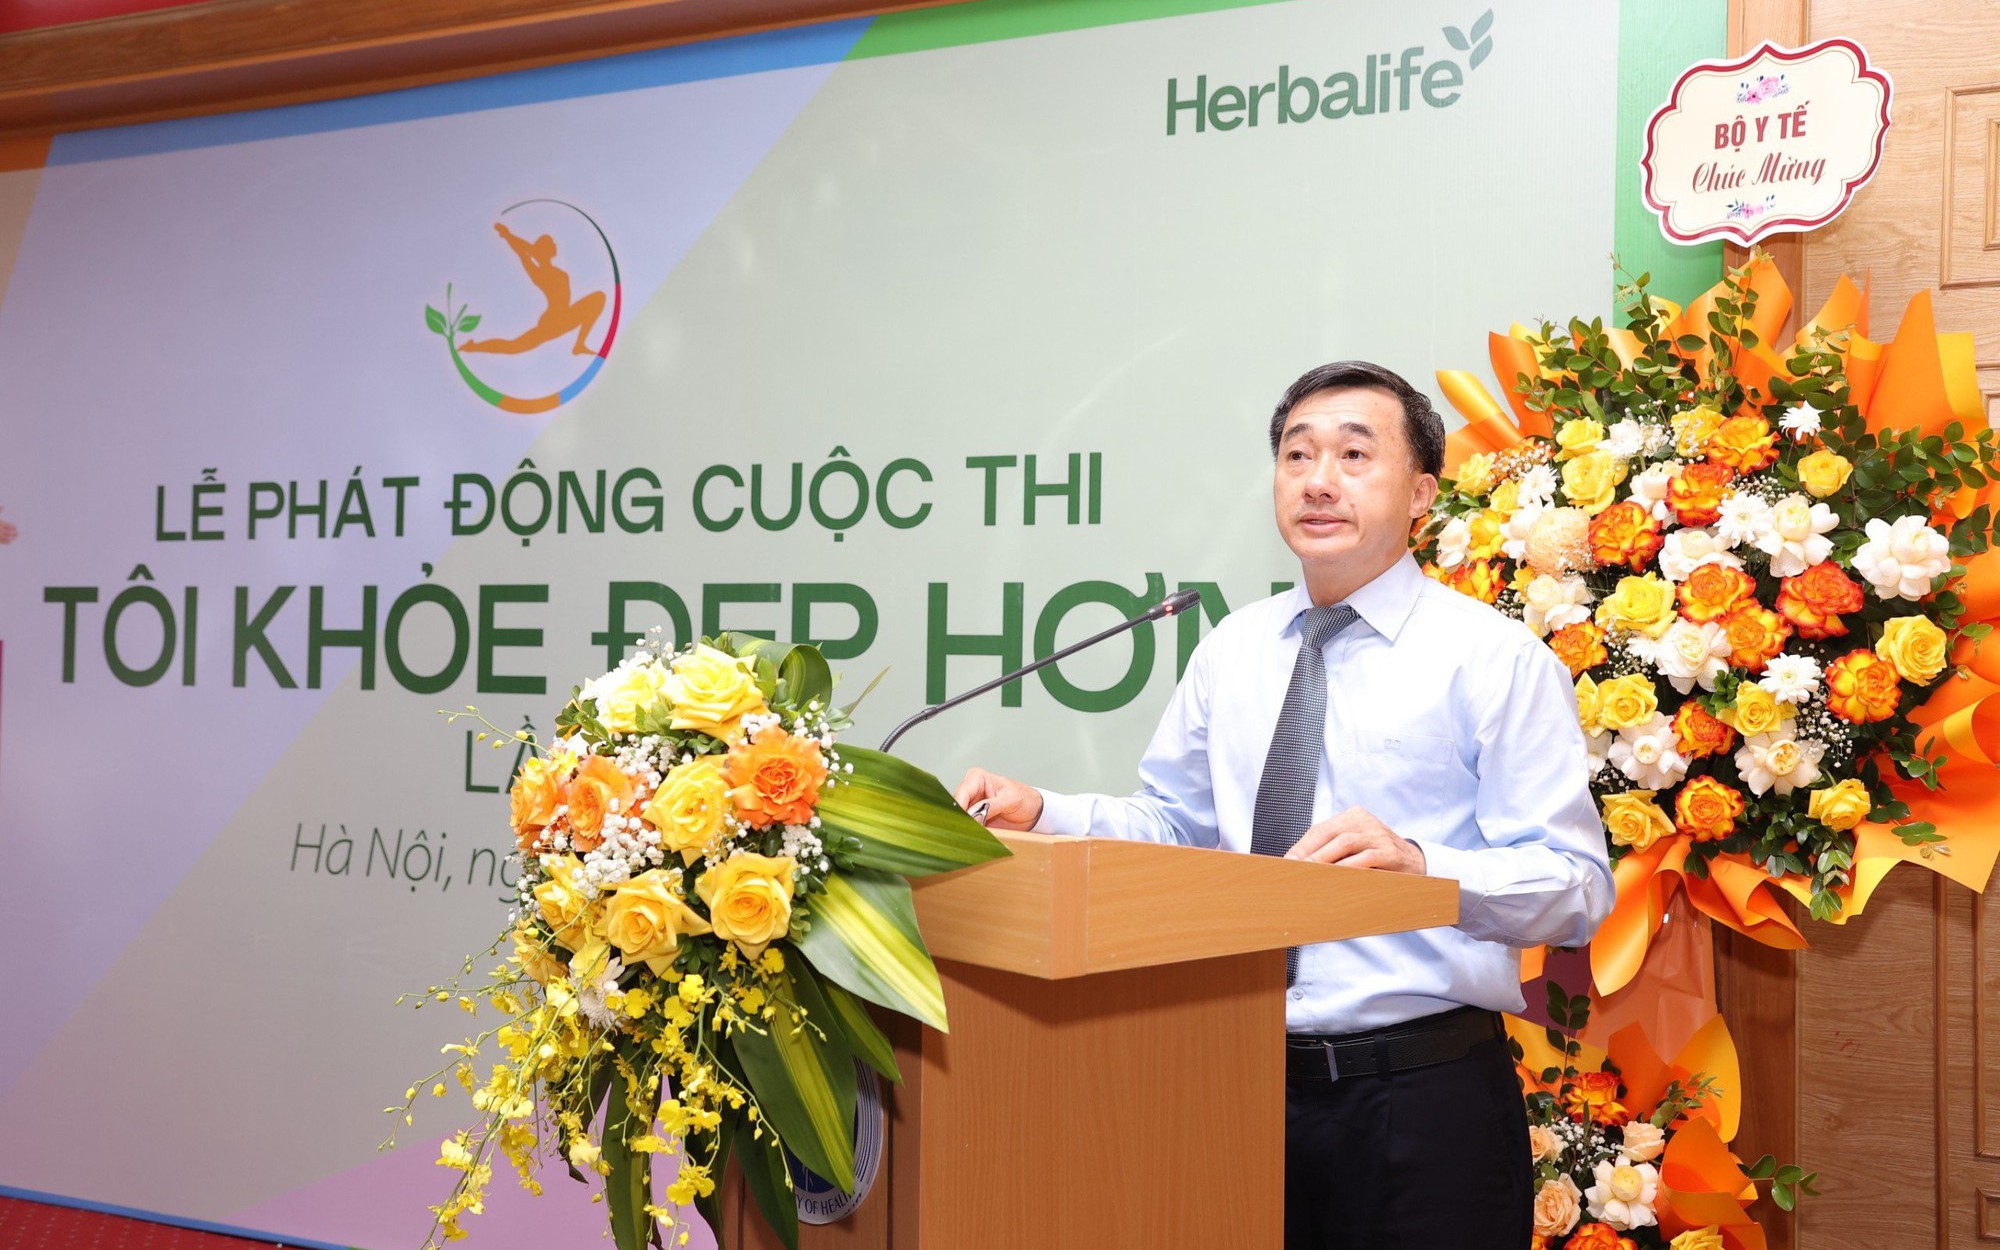 Thứ trưởng Trần Văn Thuấn: Cuộc thi "Tôi khoẻ đẹp hơn" truyền cảm hứng mạnh mẽ về tinh thần khỏe - đẹp